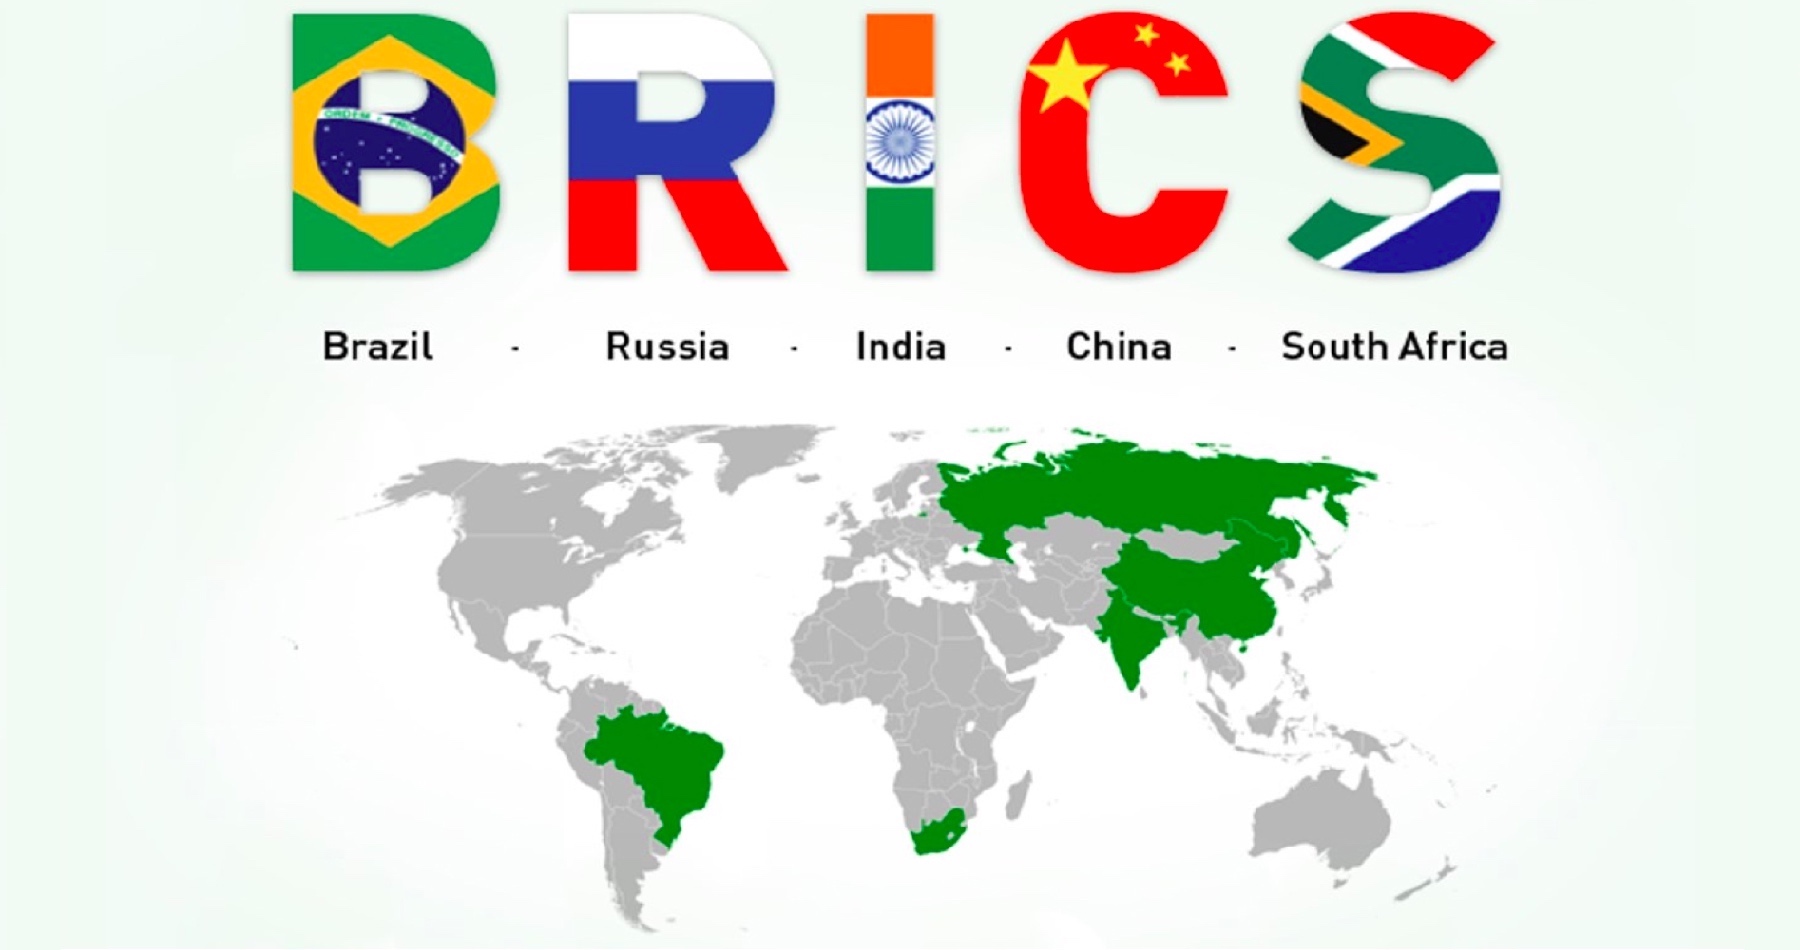 Juhoafrická vláda zvažuje preloženie kľúčového summitu BRICS, na ktorom sa bude rozhodovať o budúcnosti planéty, do Číny. Rusko bude mať na ňom zastúpenie na vysokej štátnej úrovni